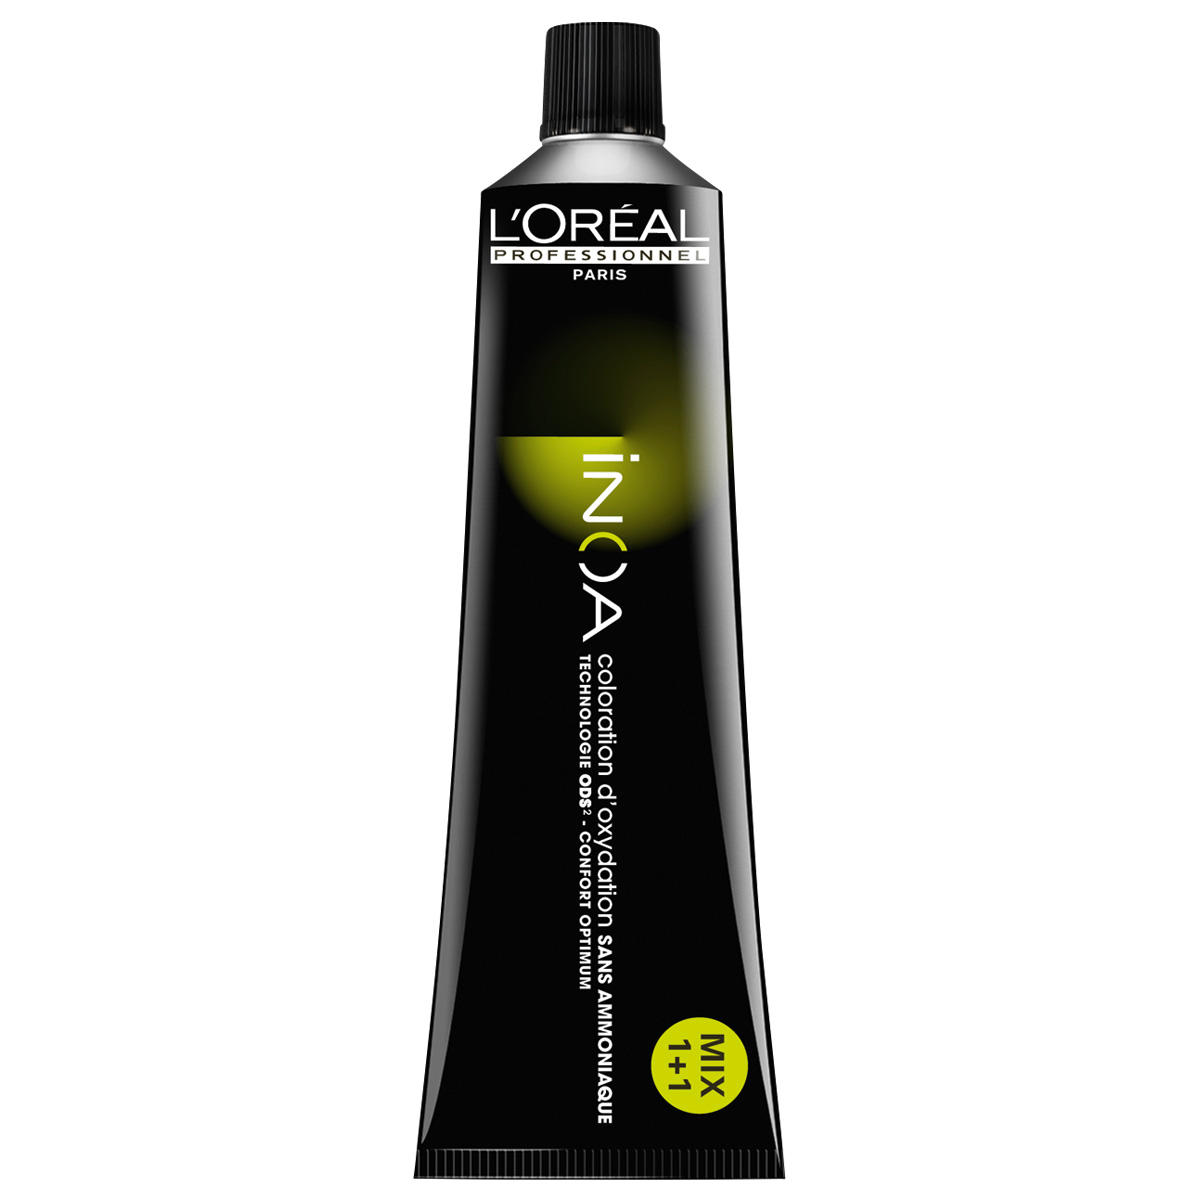 L'Oréal Professionnel Paris Coloration 2,10 Negro azul, tubo 60 ml